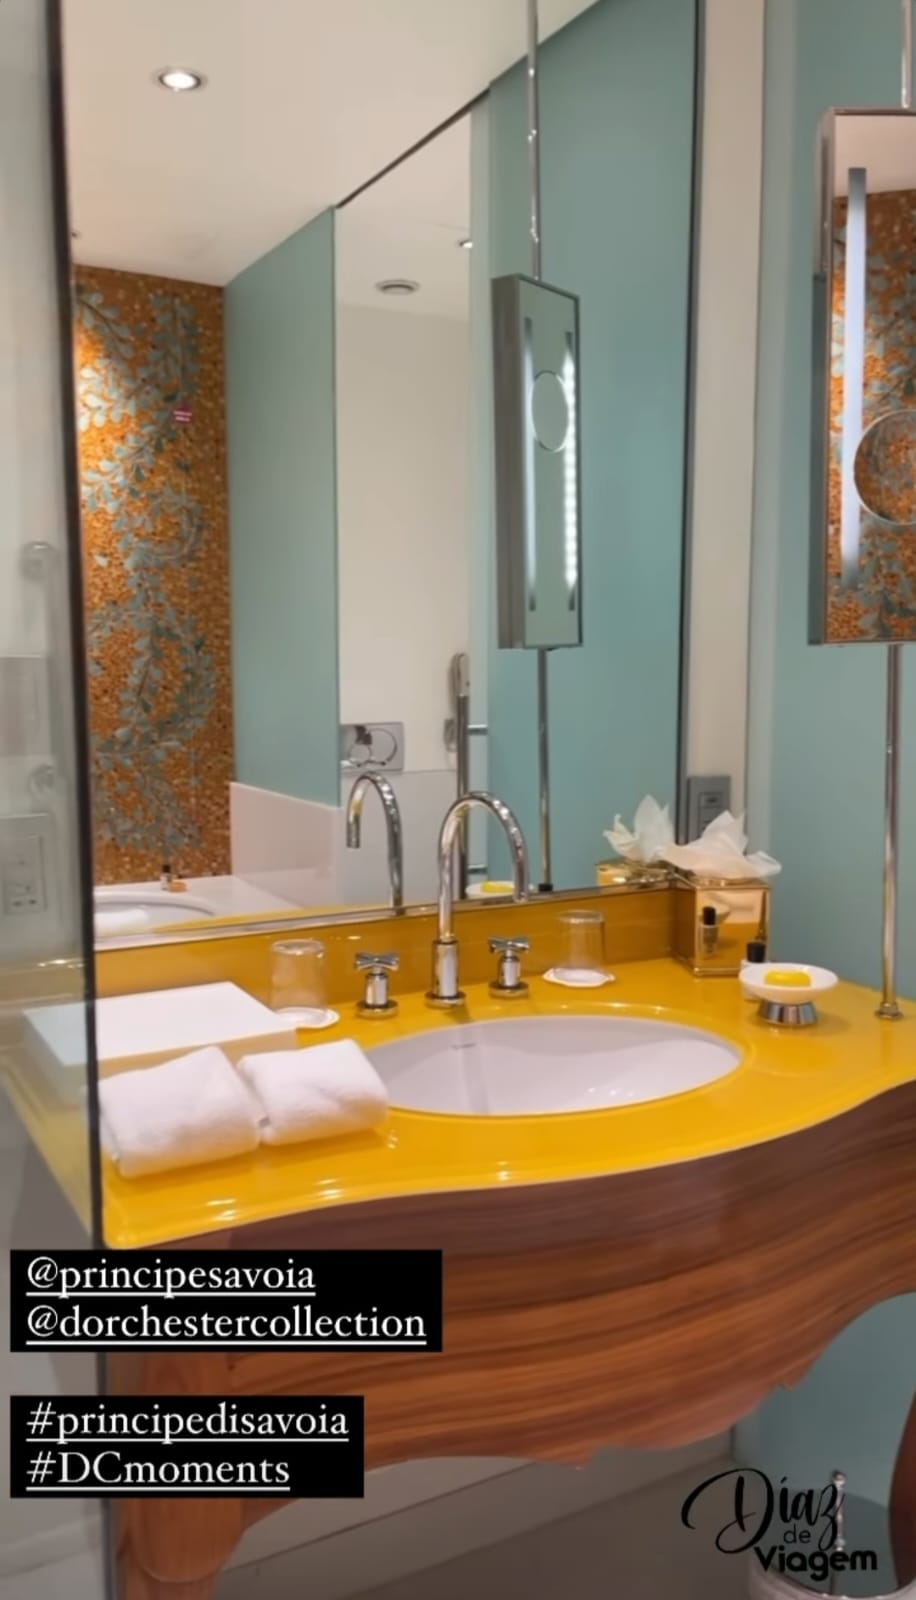 Carla Diaz mostra detalhes de quarto luxuoso em Milão - Instagram